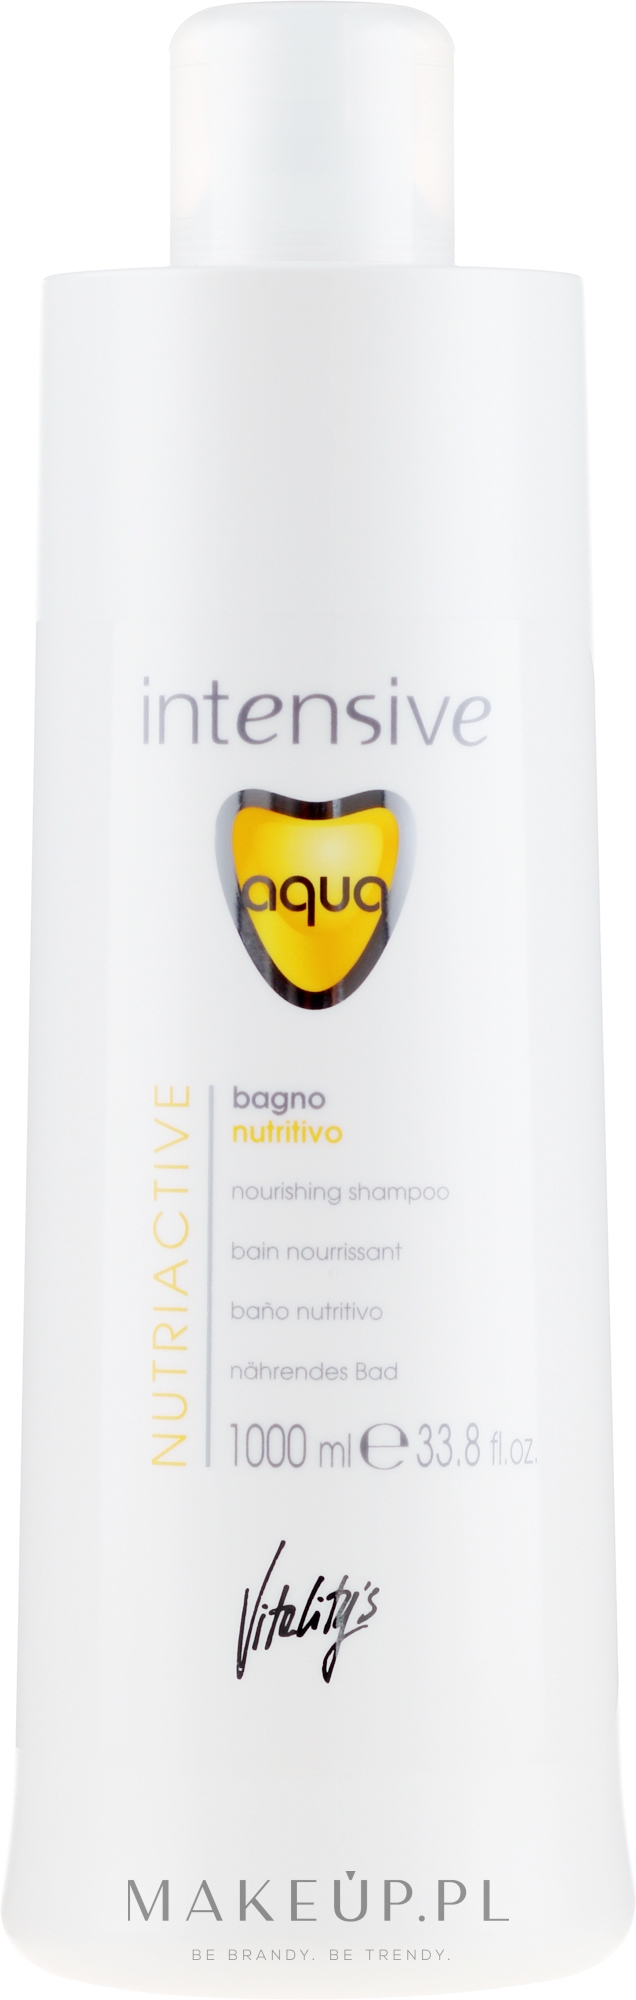 Odżywczy szampon do włosów suchych - Vitality’s Intensive Aqua Nourishing Shampoo — Zdjęcie 1000 ml